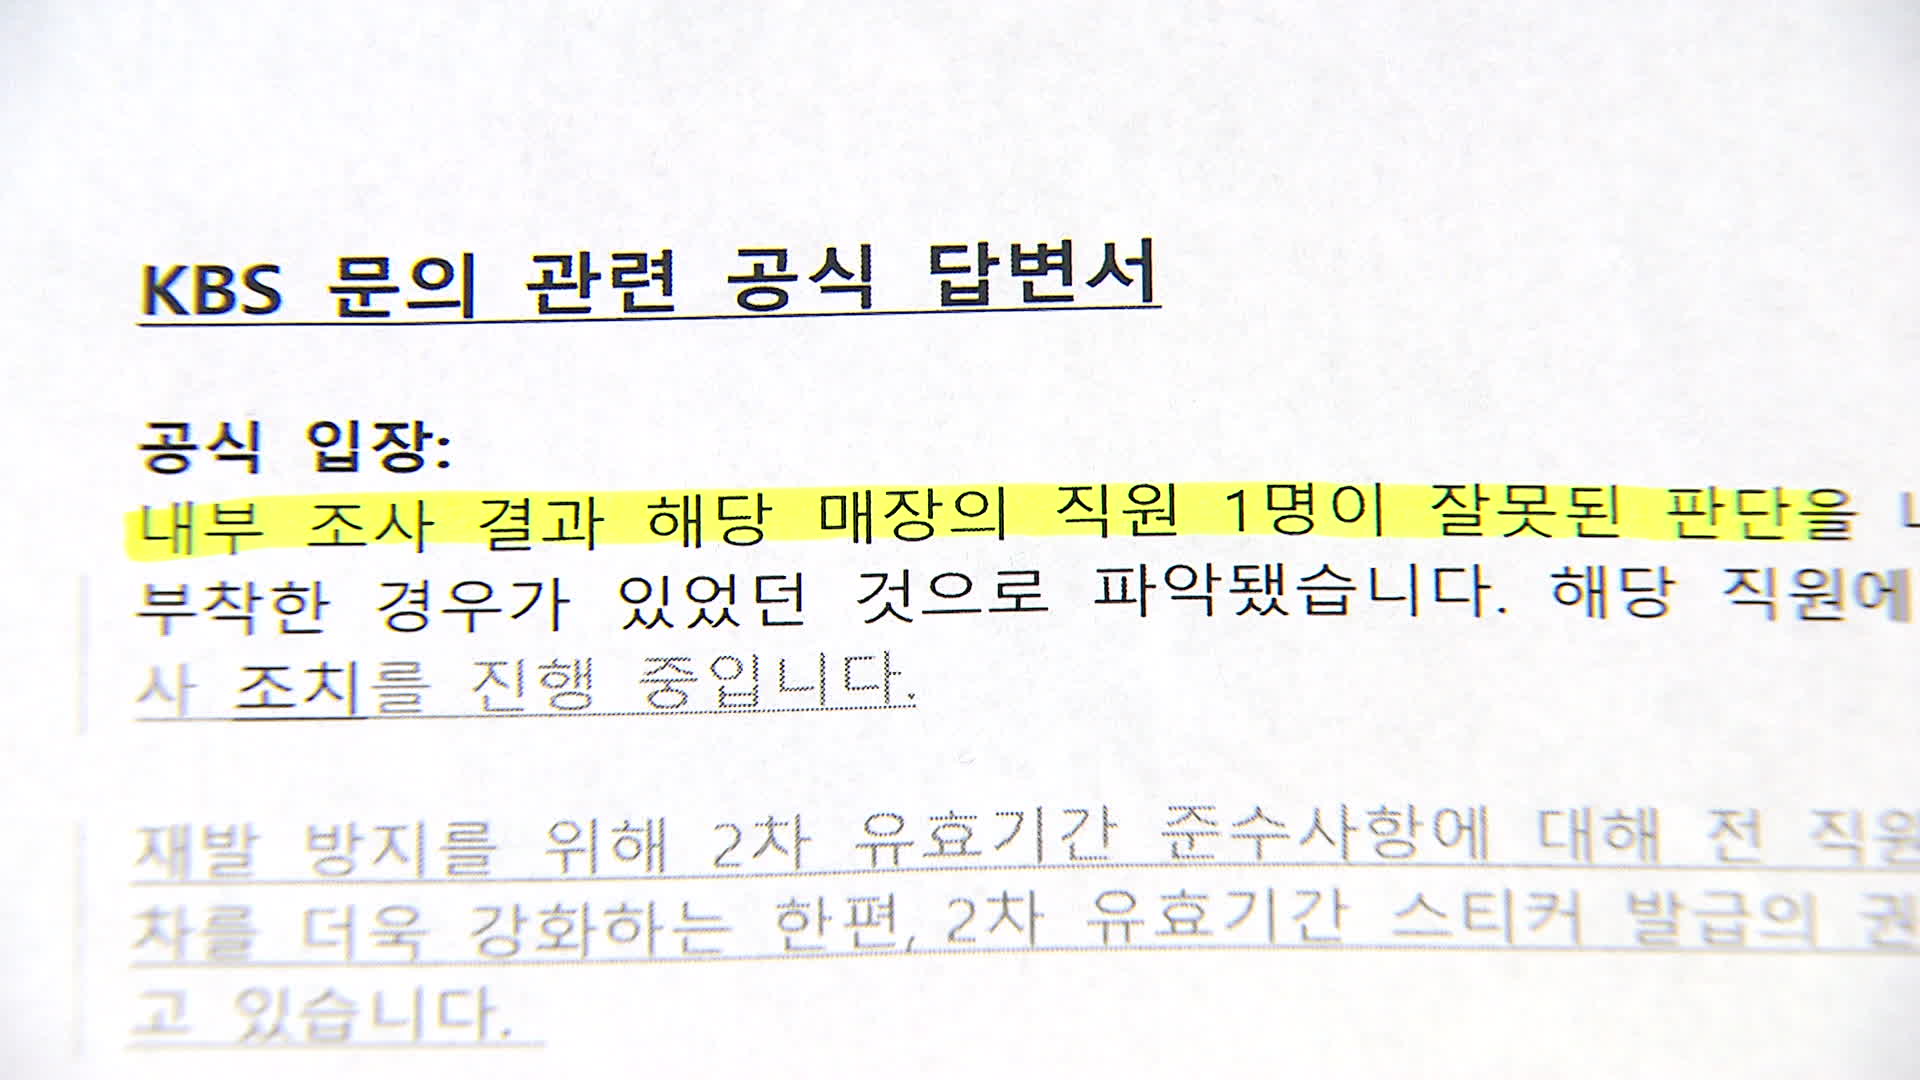 한국맥도날드가 KBS 취재진에게 보낸 공식 입장